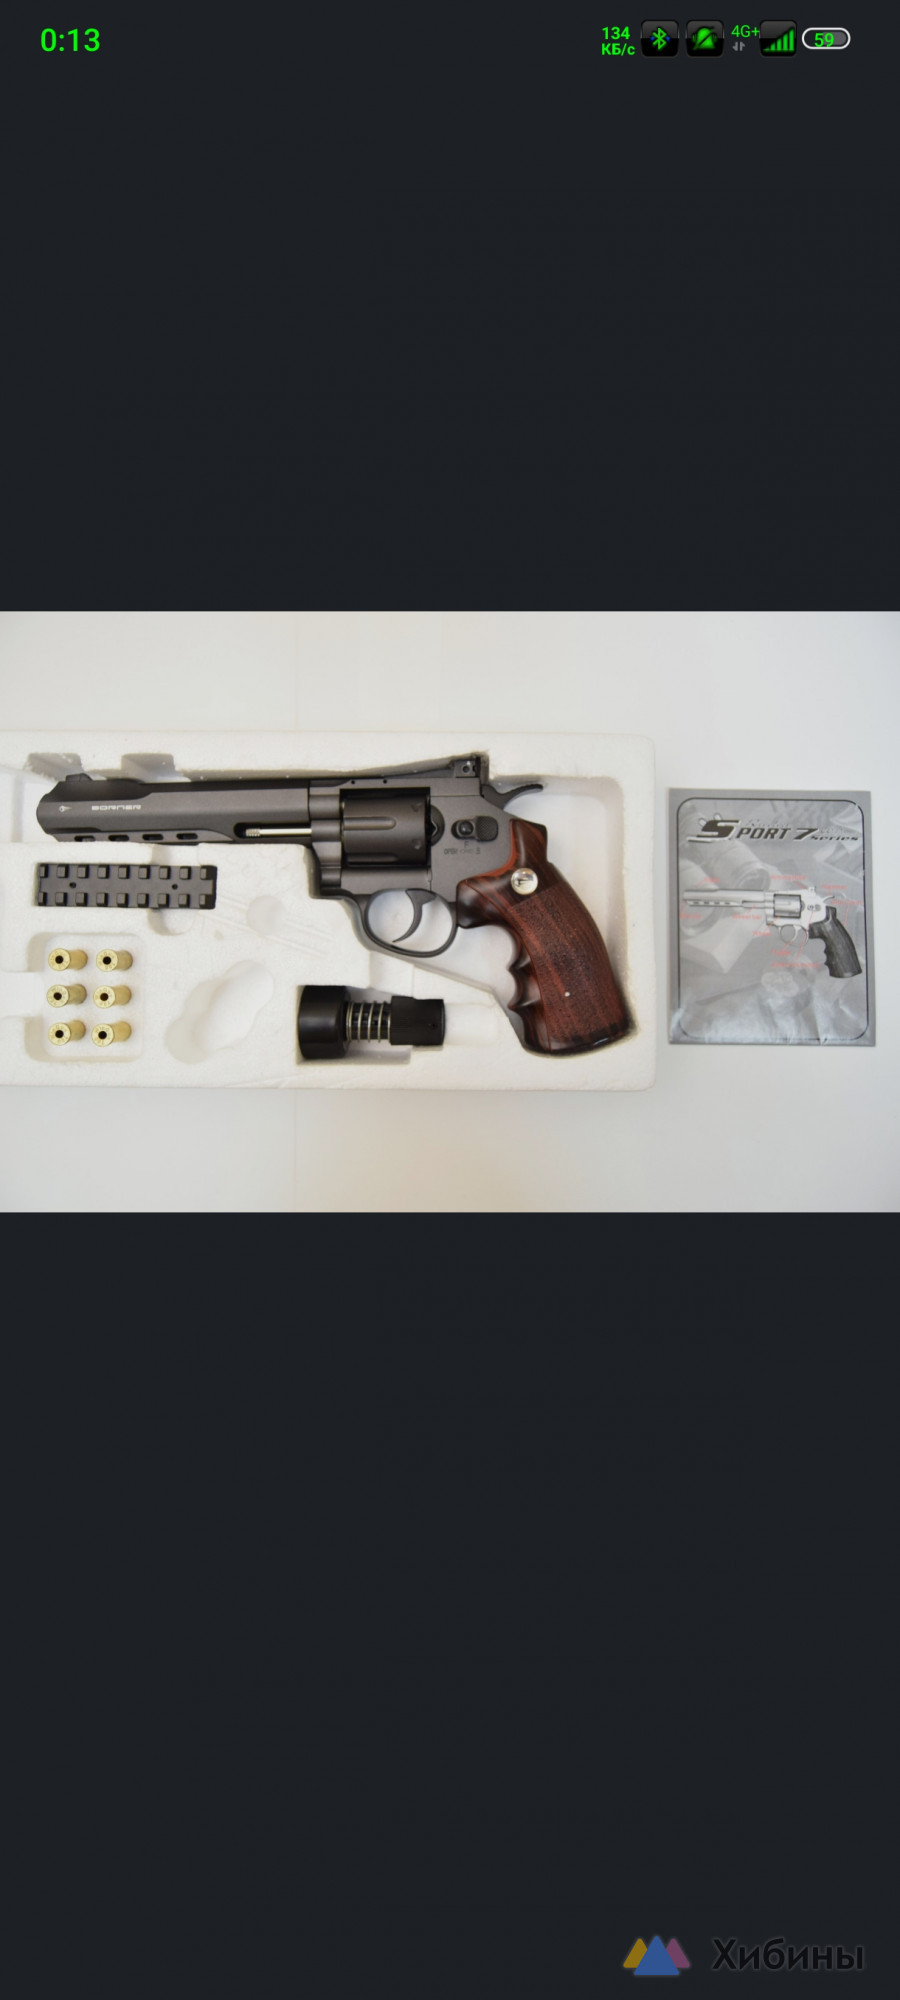 Пневматический револьвер Borner Super Sport 702